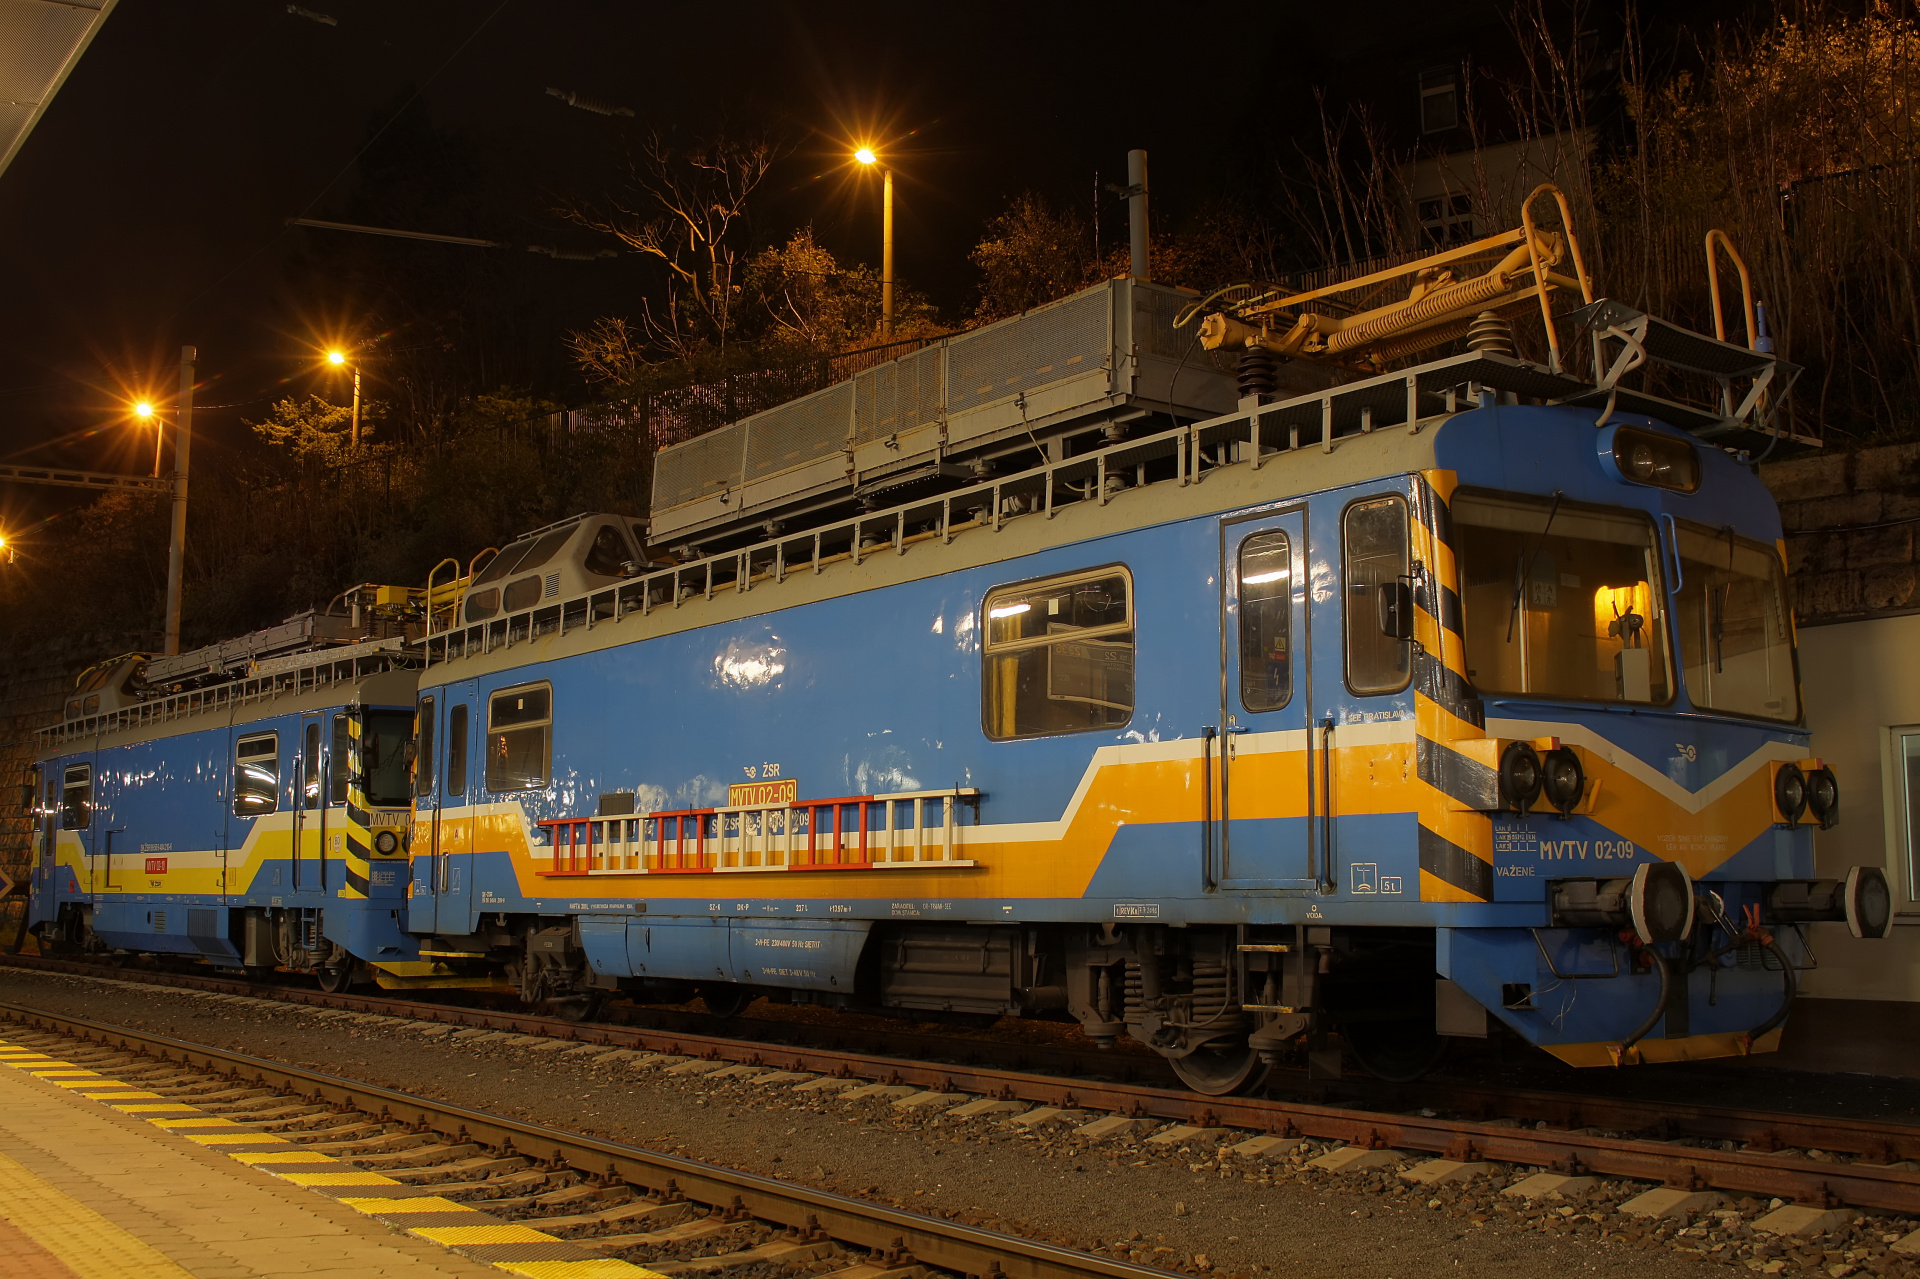 Vagónka Studénka M153.0 MVTV 02-09 (Podróże » Bratysława » Pojazdy » Pociągi i lokomotywy)